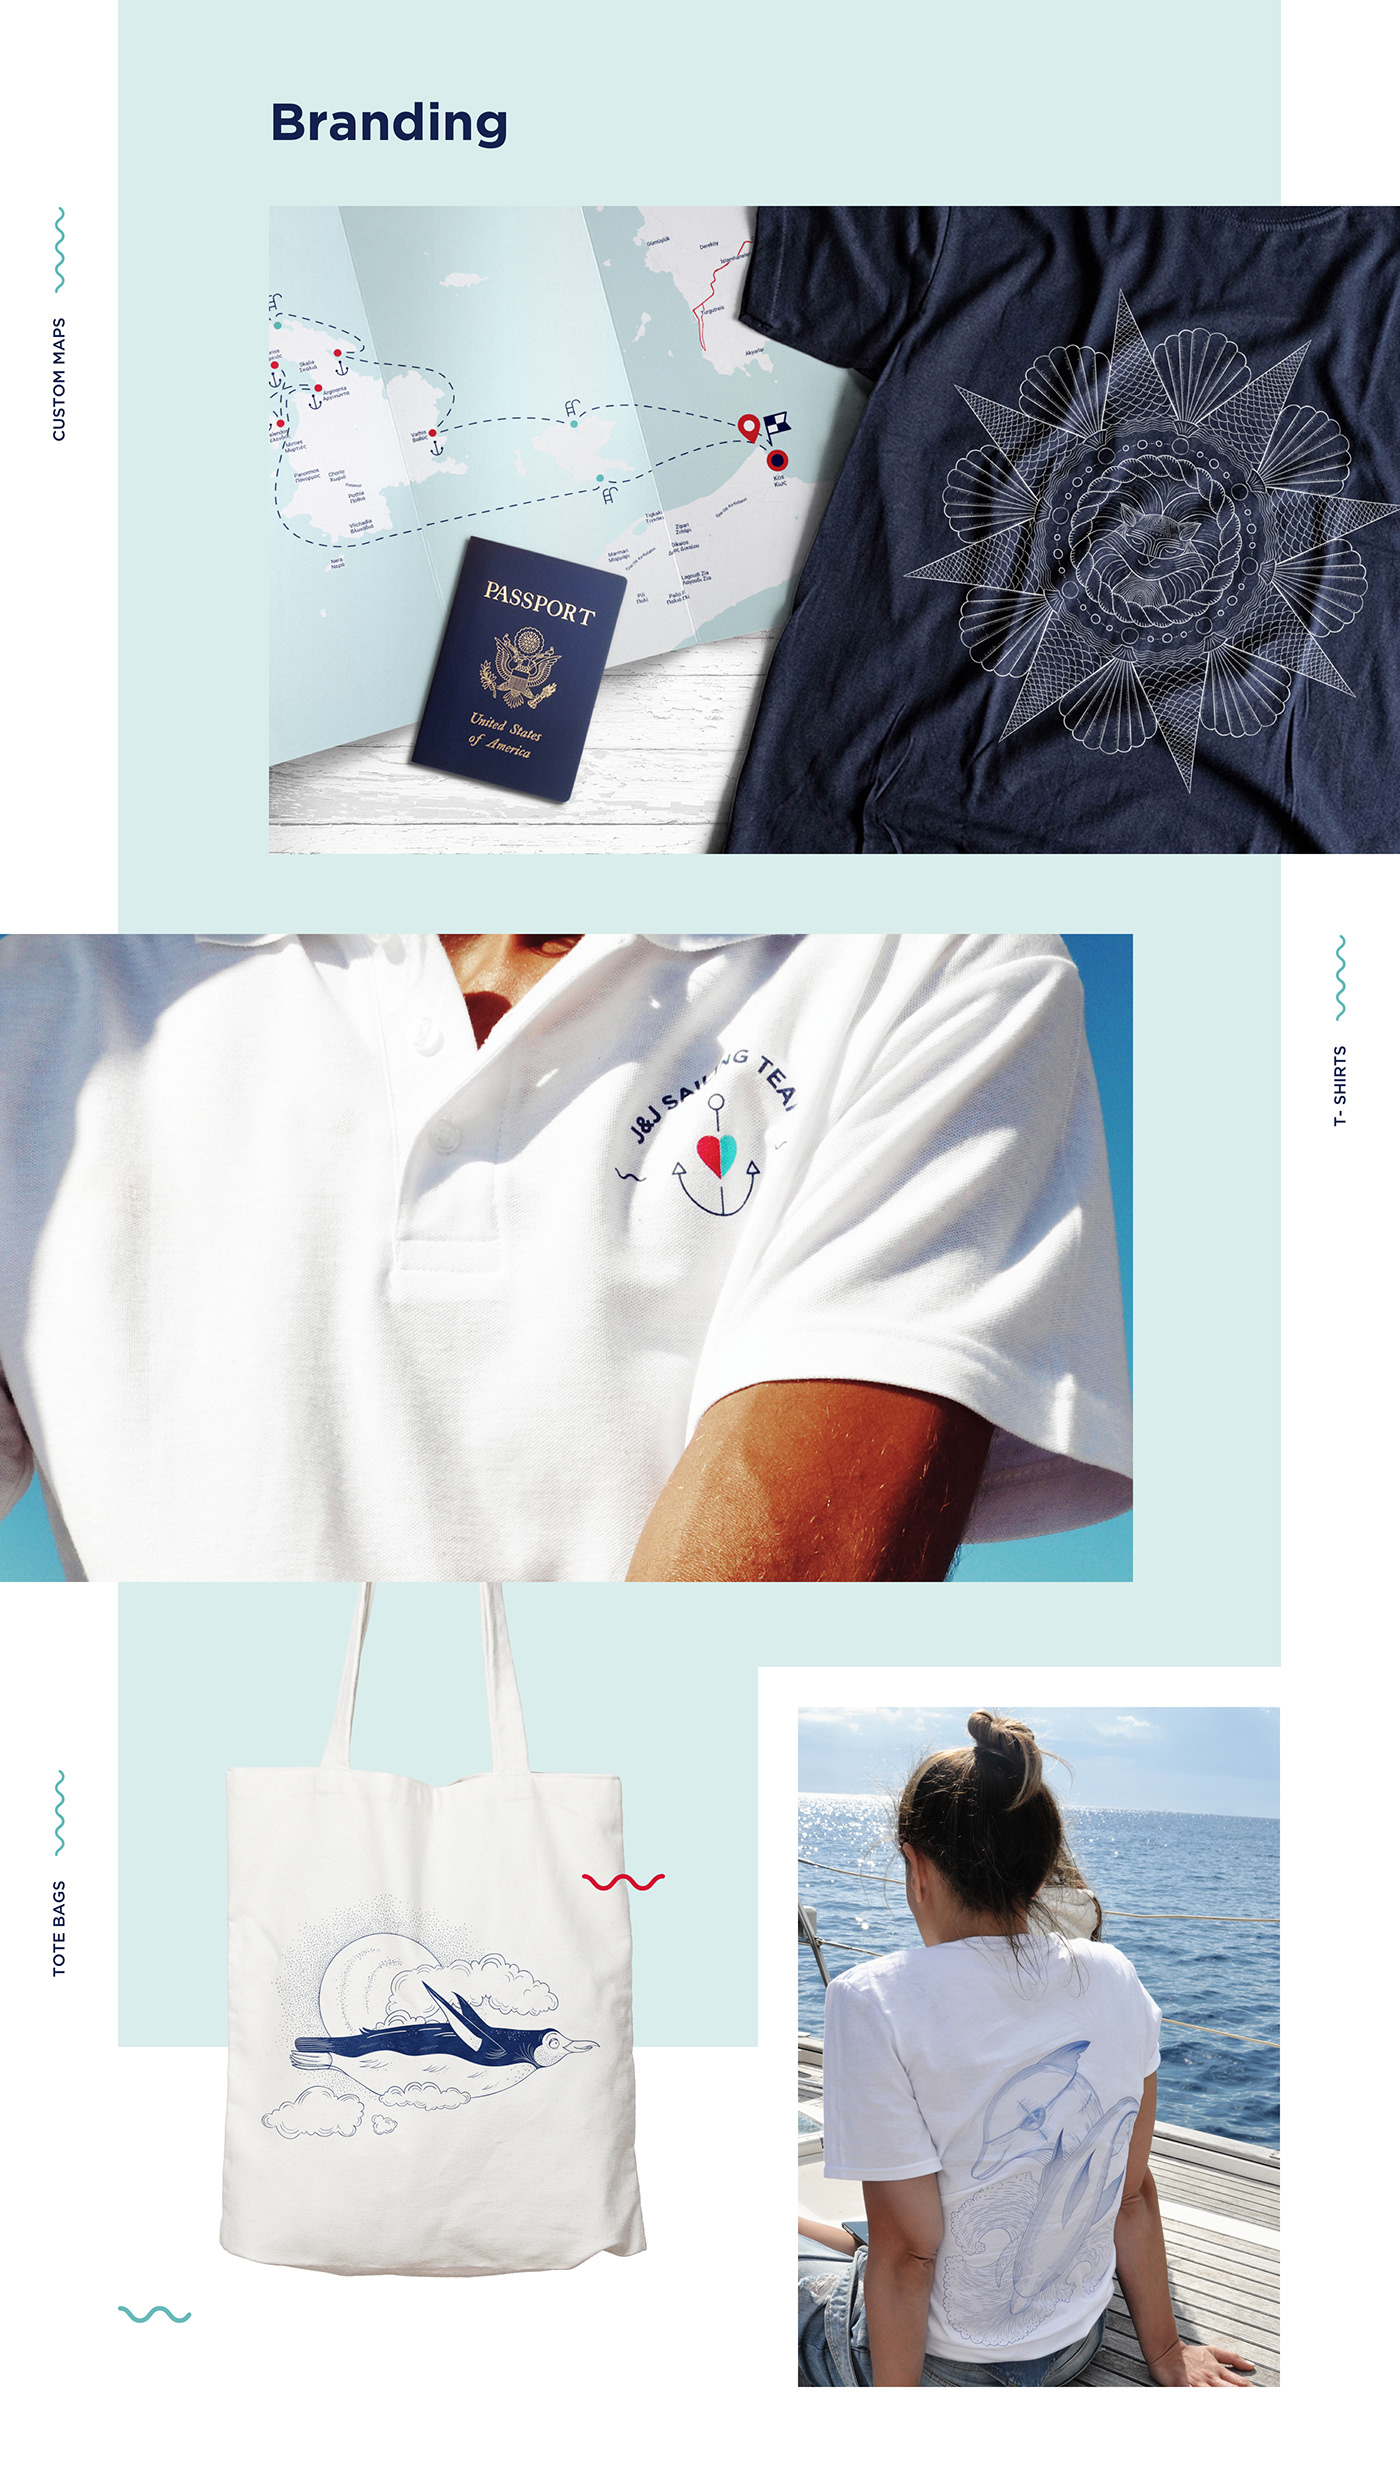 sailing yacht tourism Greece jack&jenny ux art direction  Merch e-commerce eshop